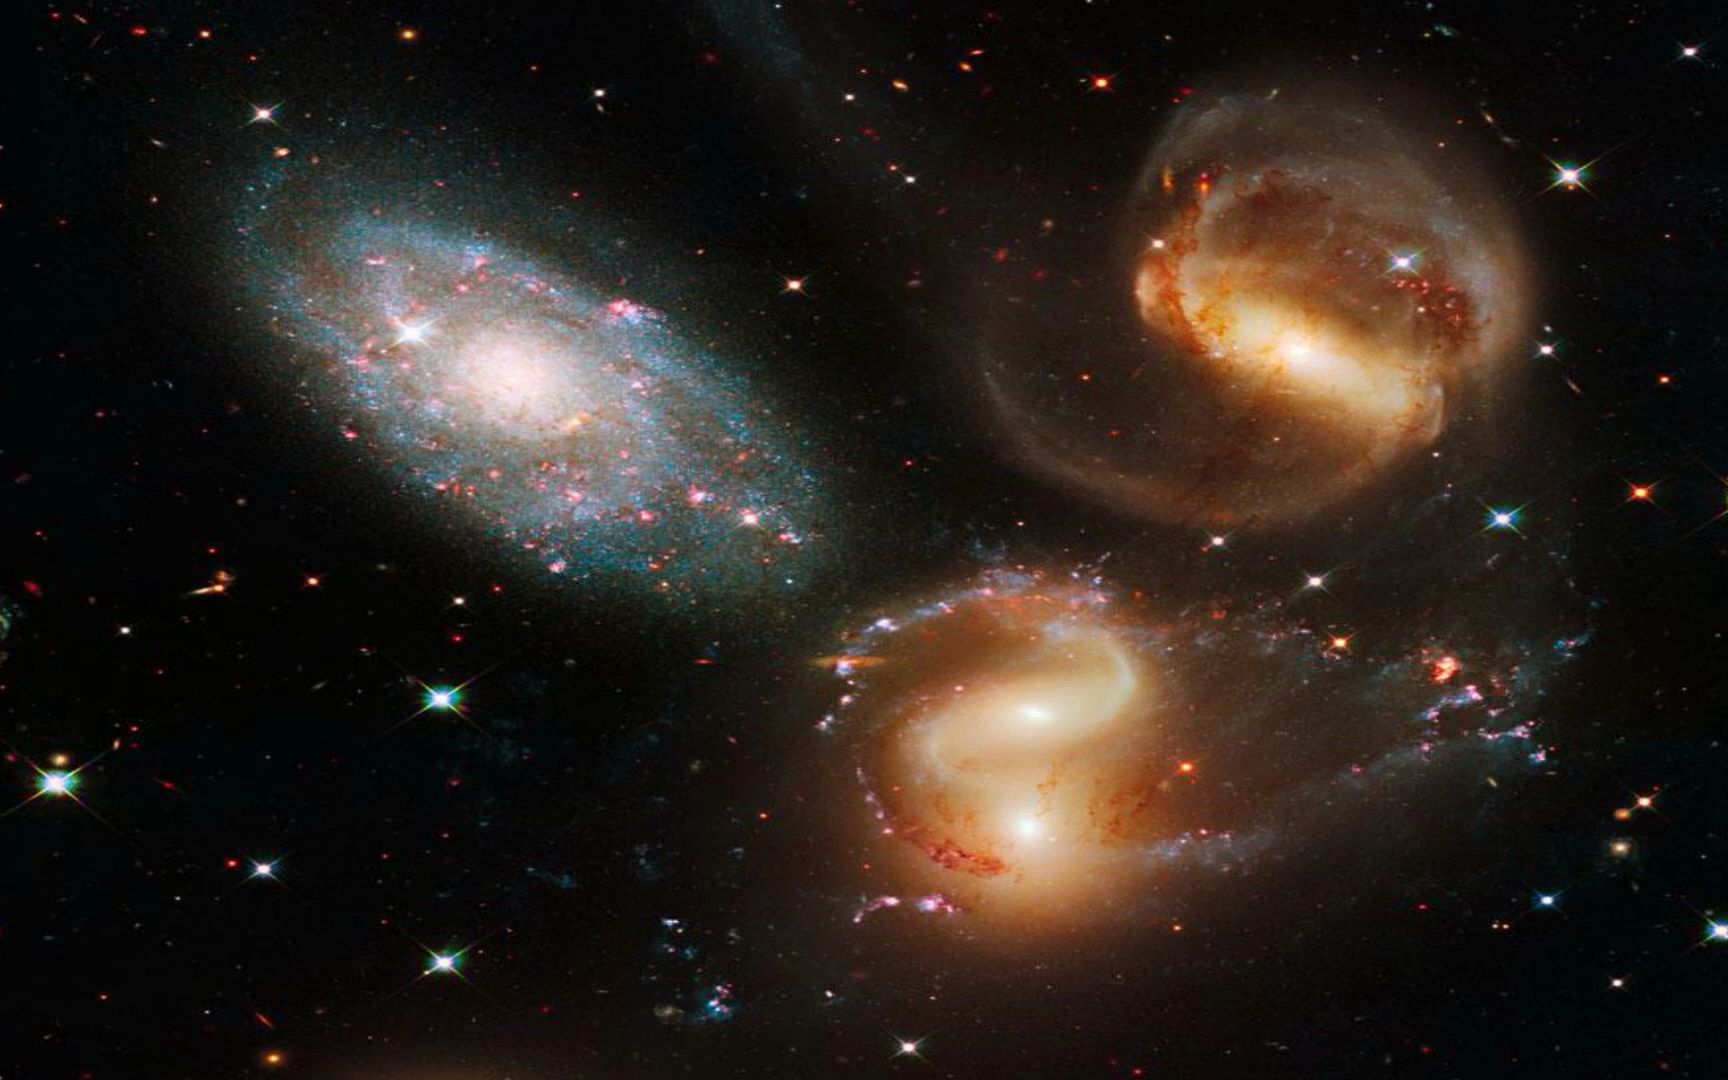 哈勃望远镜拍摄的星云精彩照片合集[1080P]